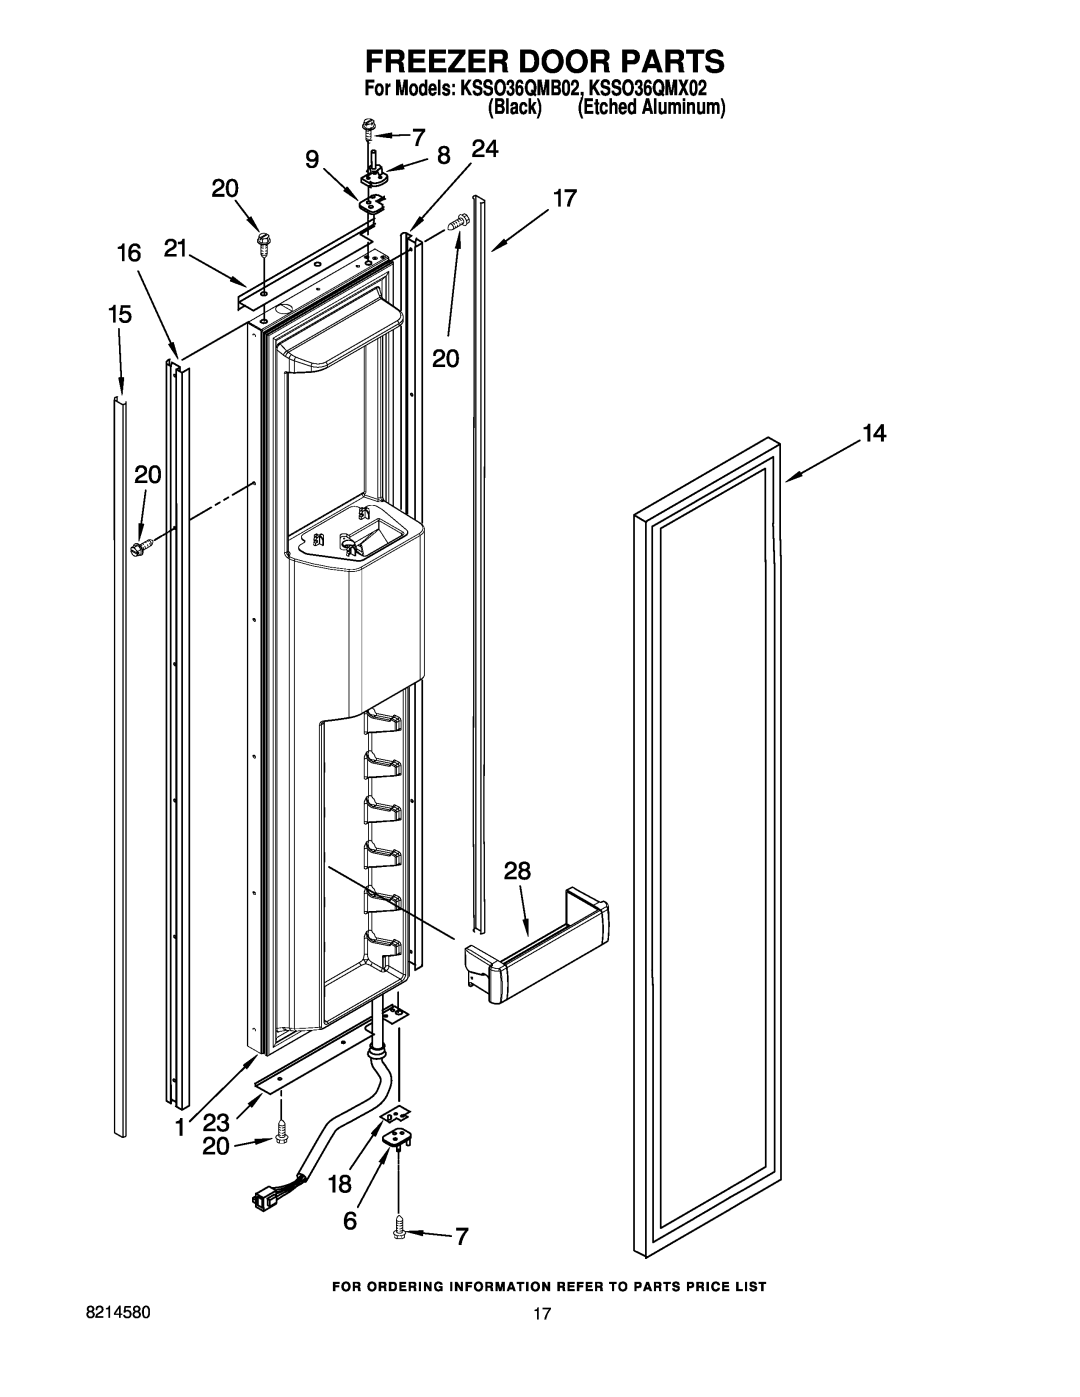 KitchenAid manual Freezer Door Parts, For Models KSSO36QMB02, KSSO36QMX02, Black, Etched Aluminum 